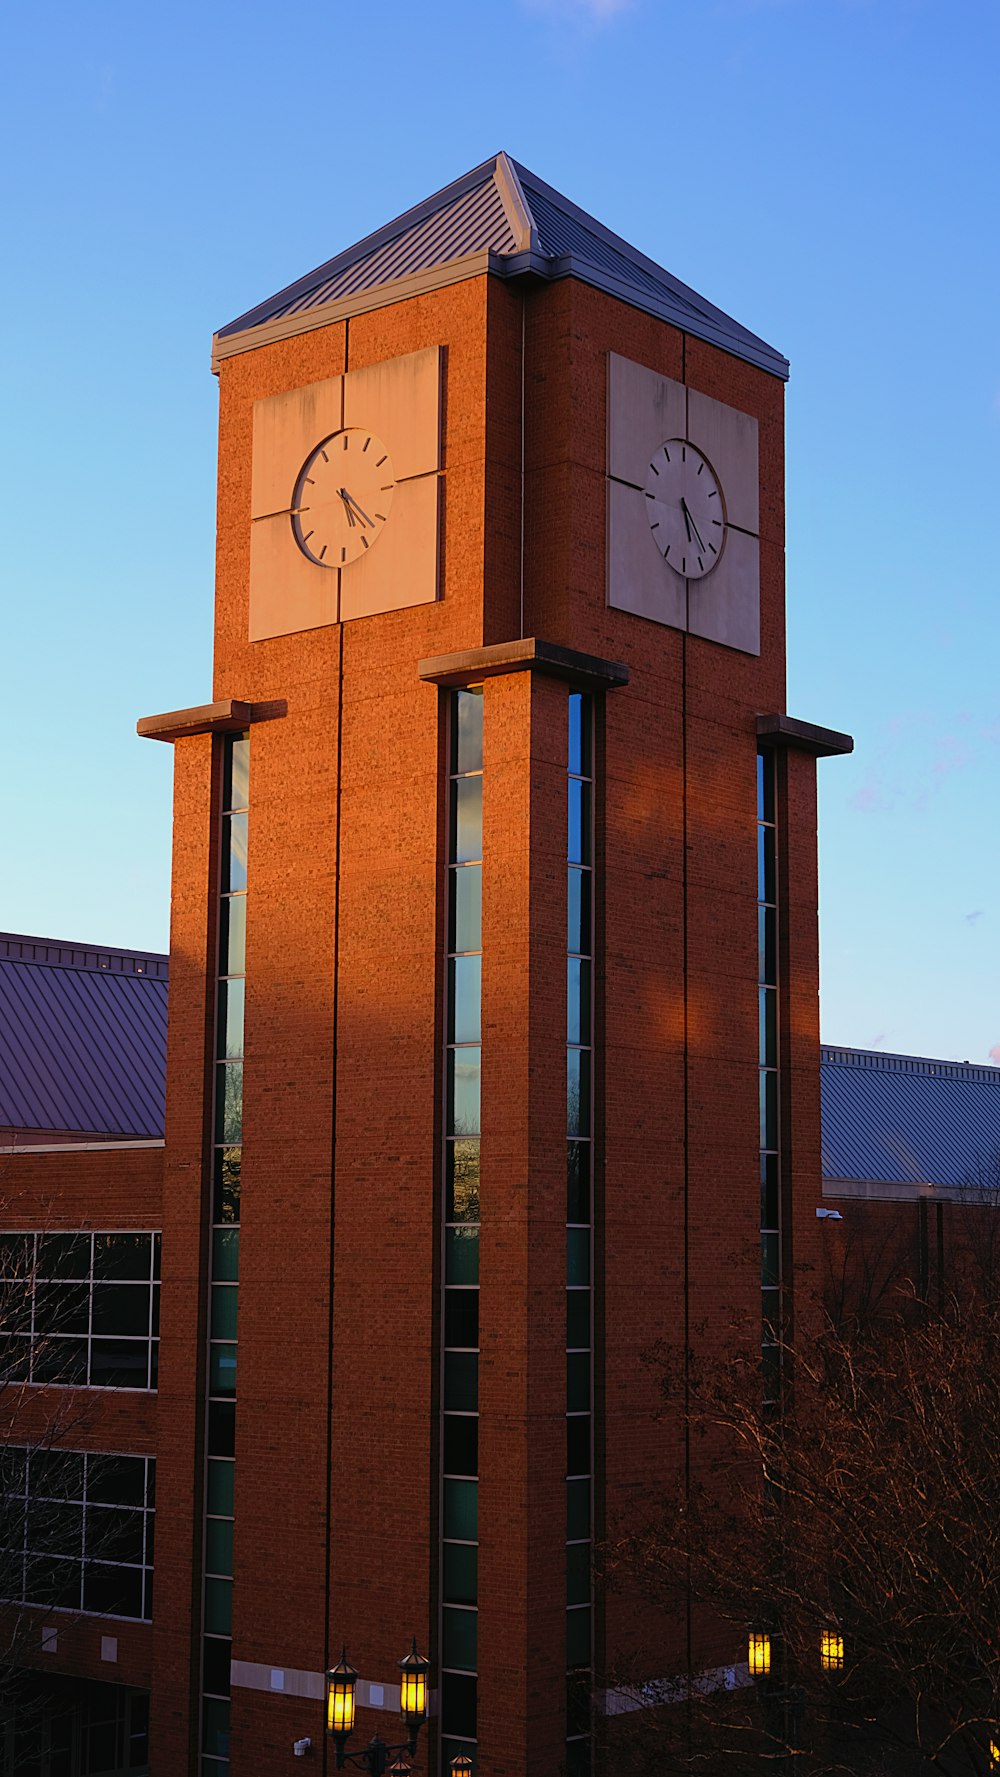 une haute tour d’horloge en briques avec une horloge de chaque côté